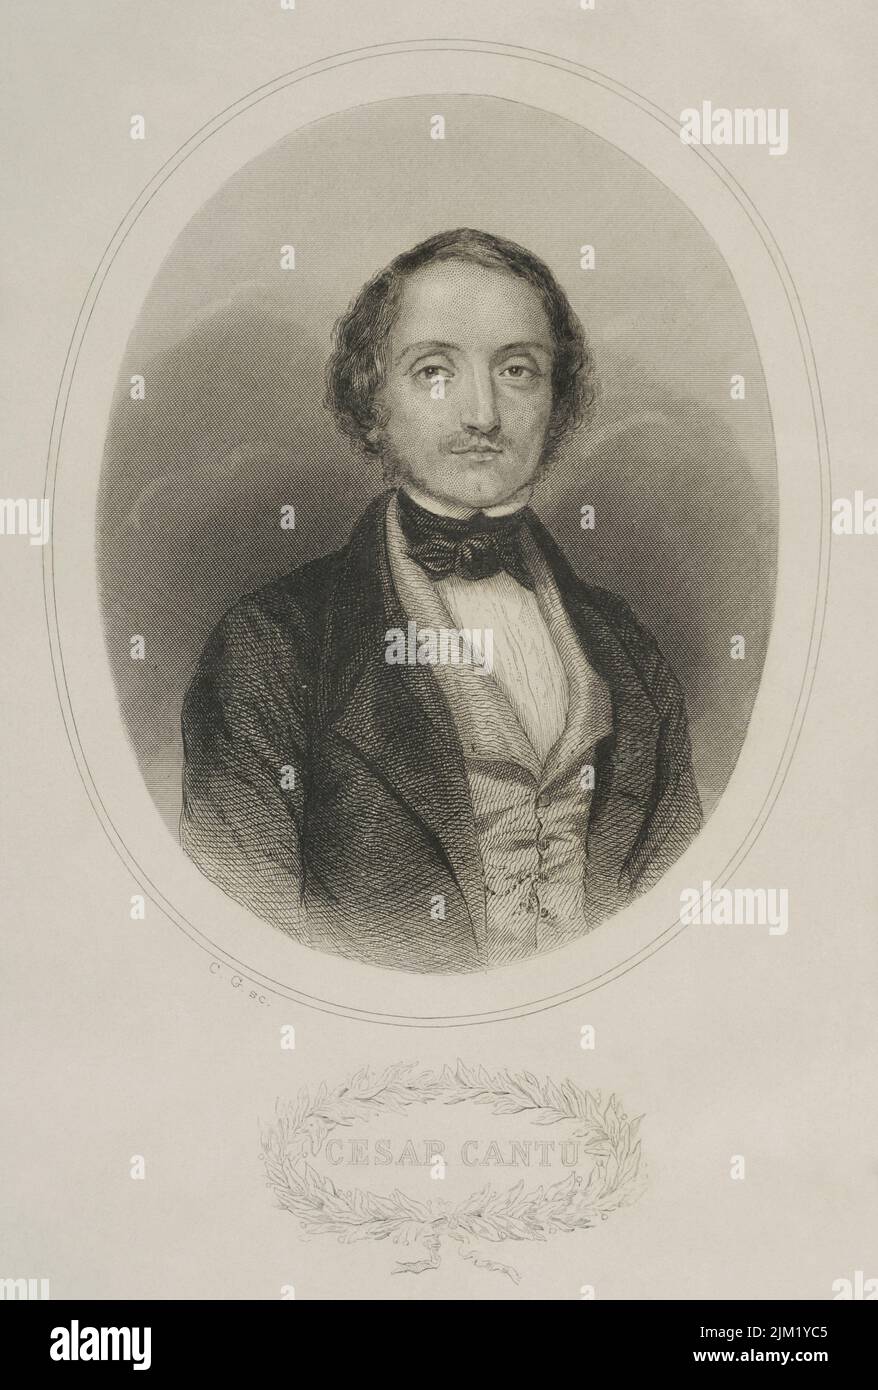 Cesare Cantù (1804-1895). Historien et écrivain italien. Portrait. Gravure. 'Historia Universal' par César Cantú. Volume I, 1854. Banque D'Images